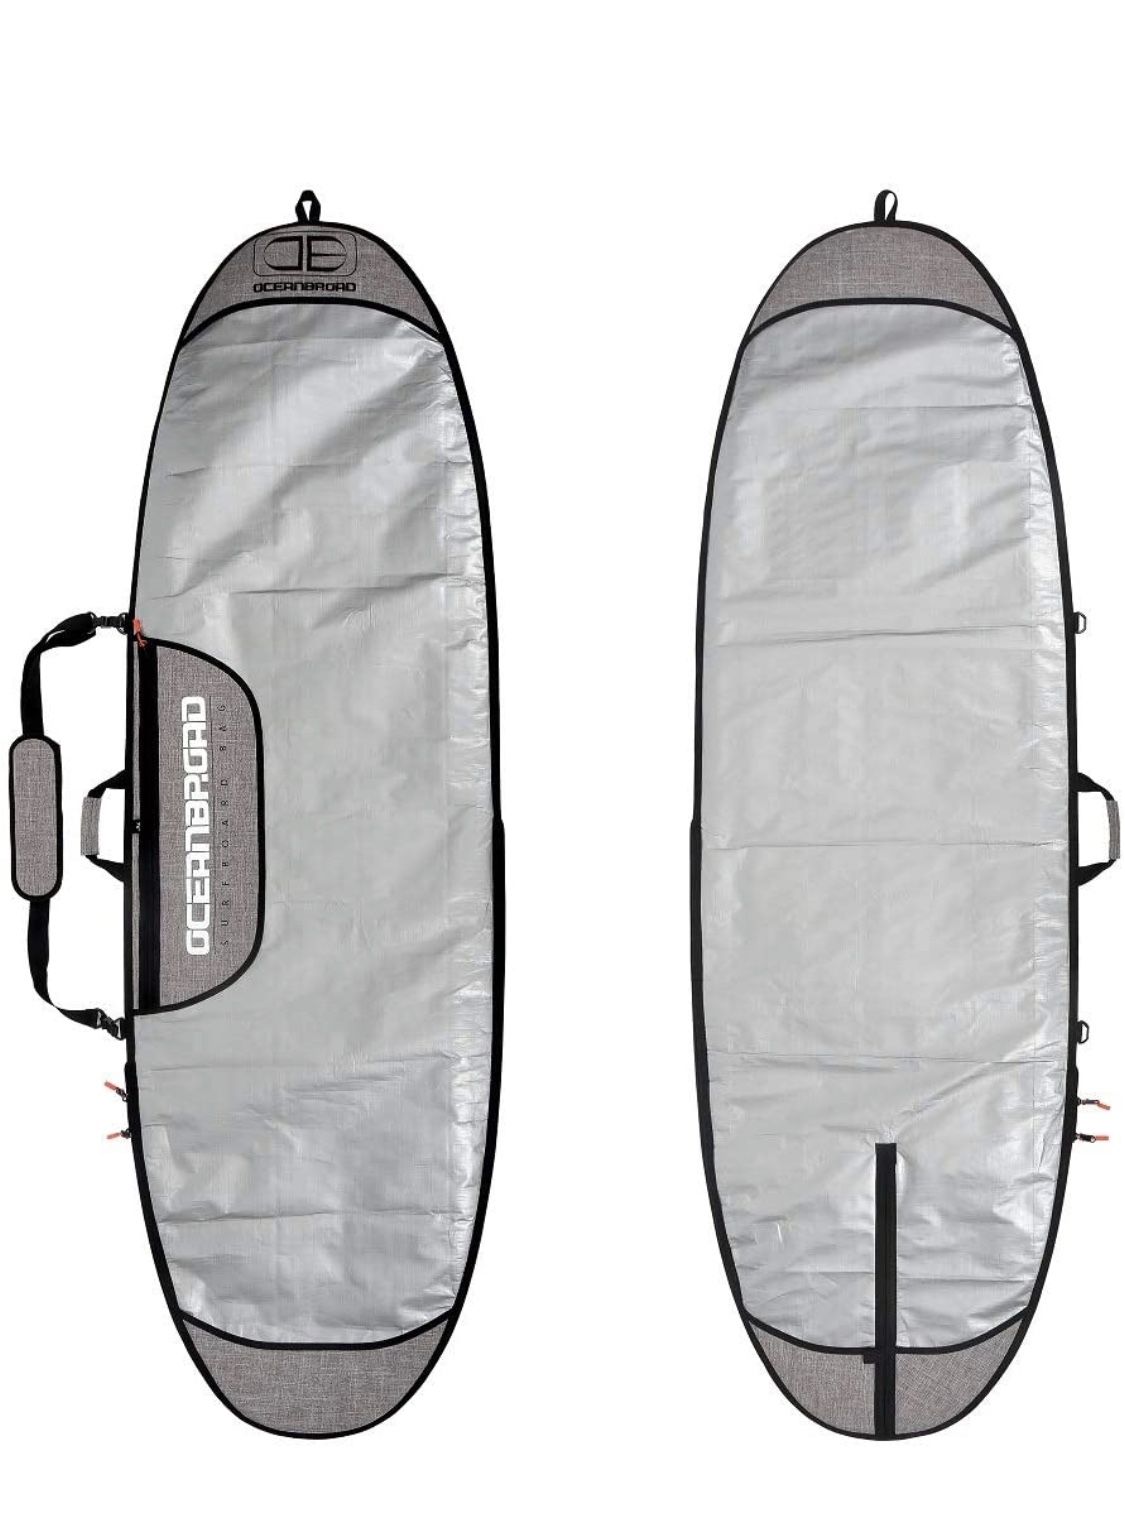 OCEANBROAD 7’6” Surfboard Longboard Bag